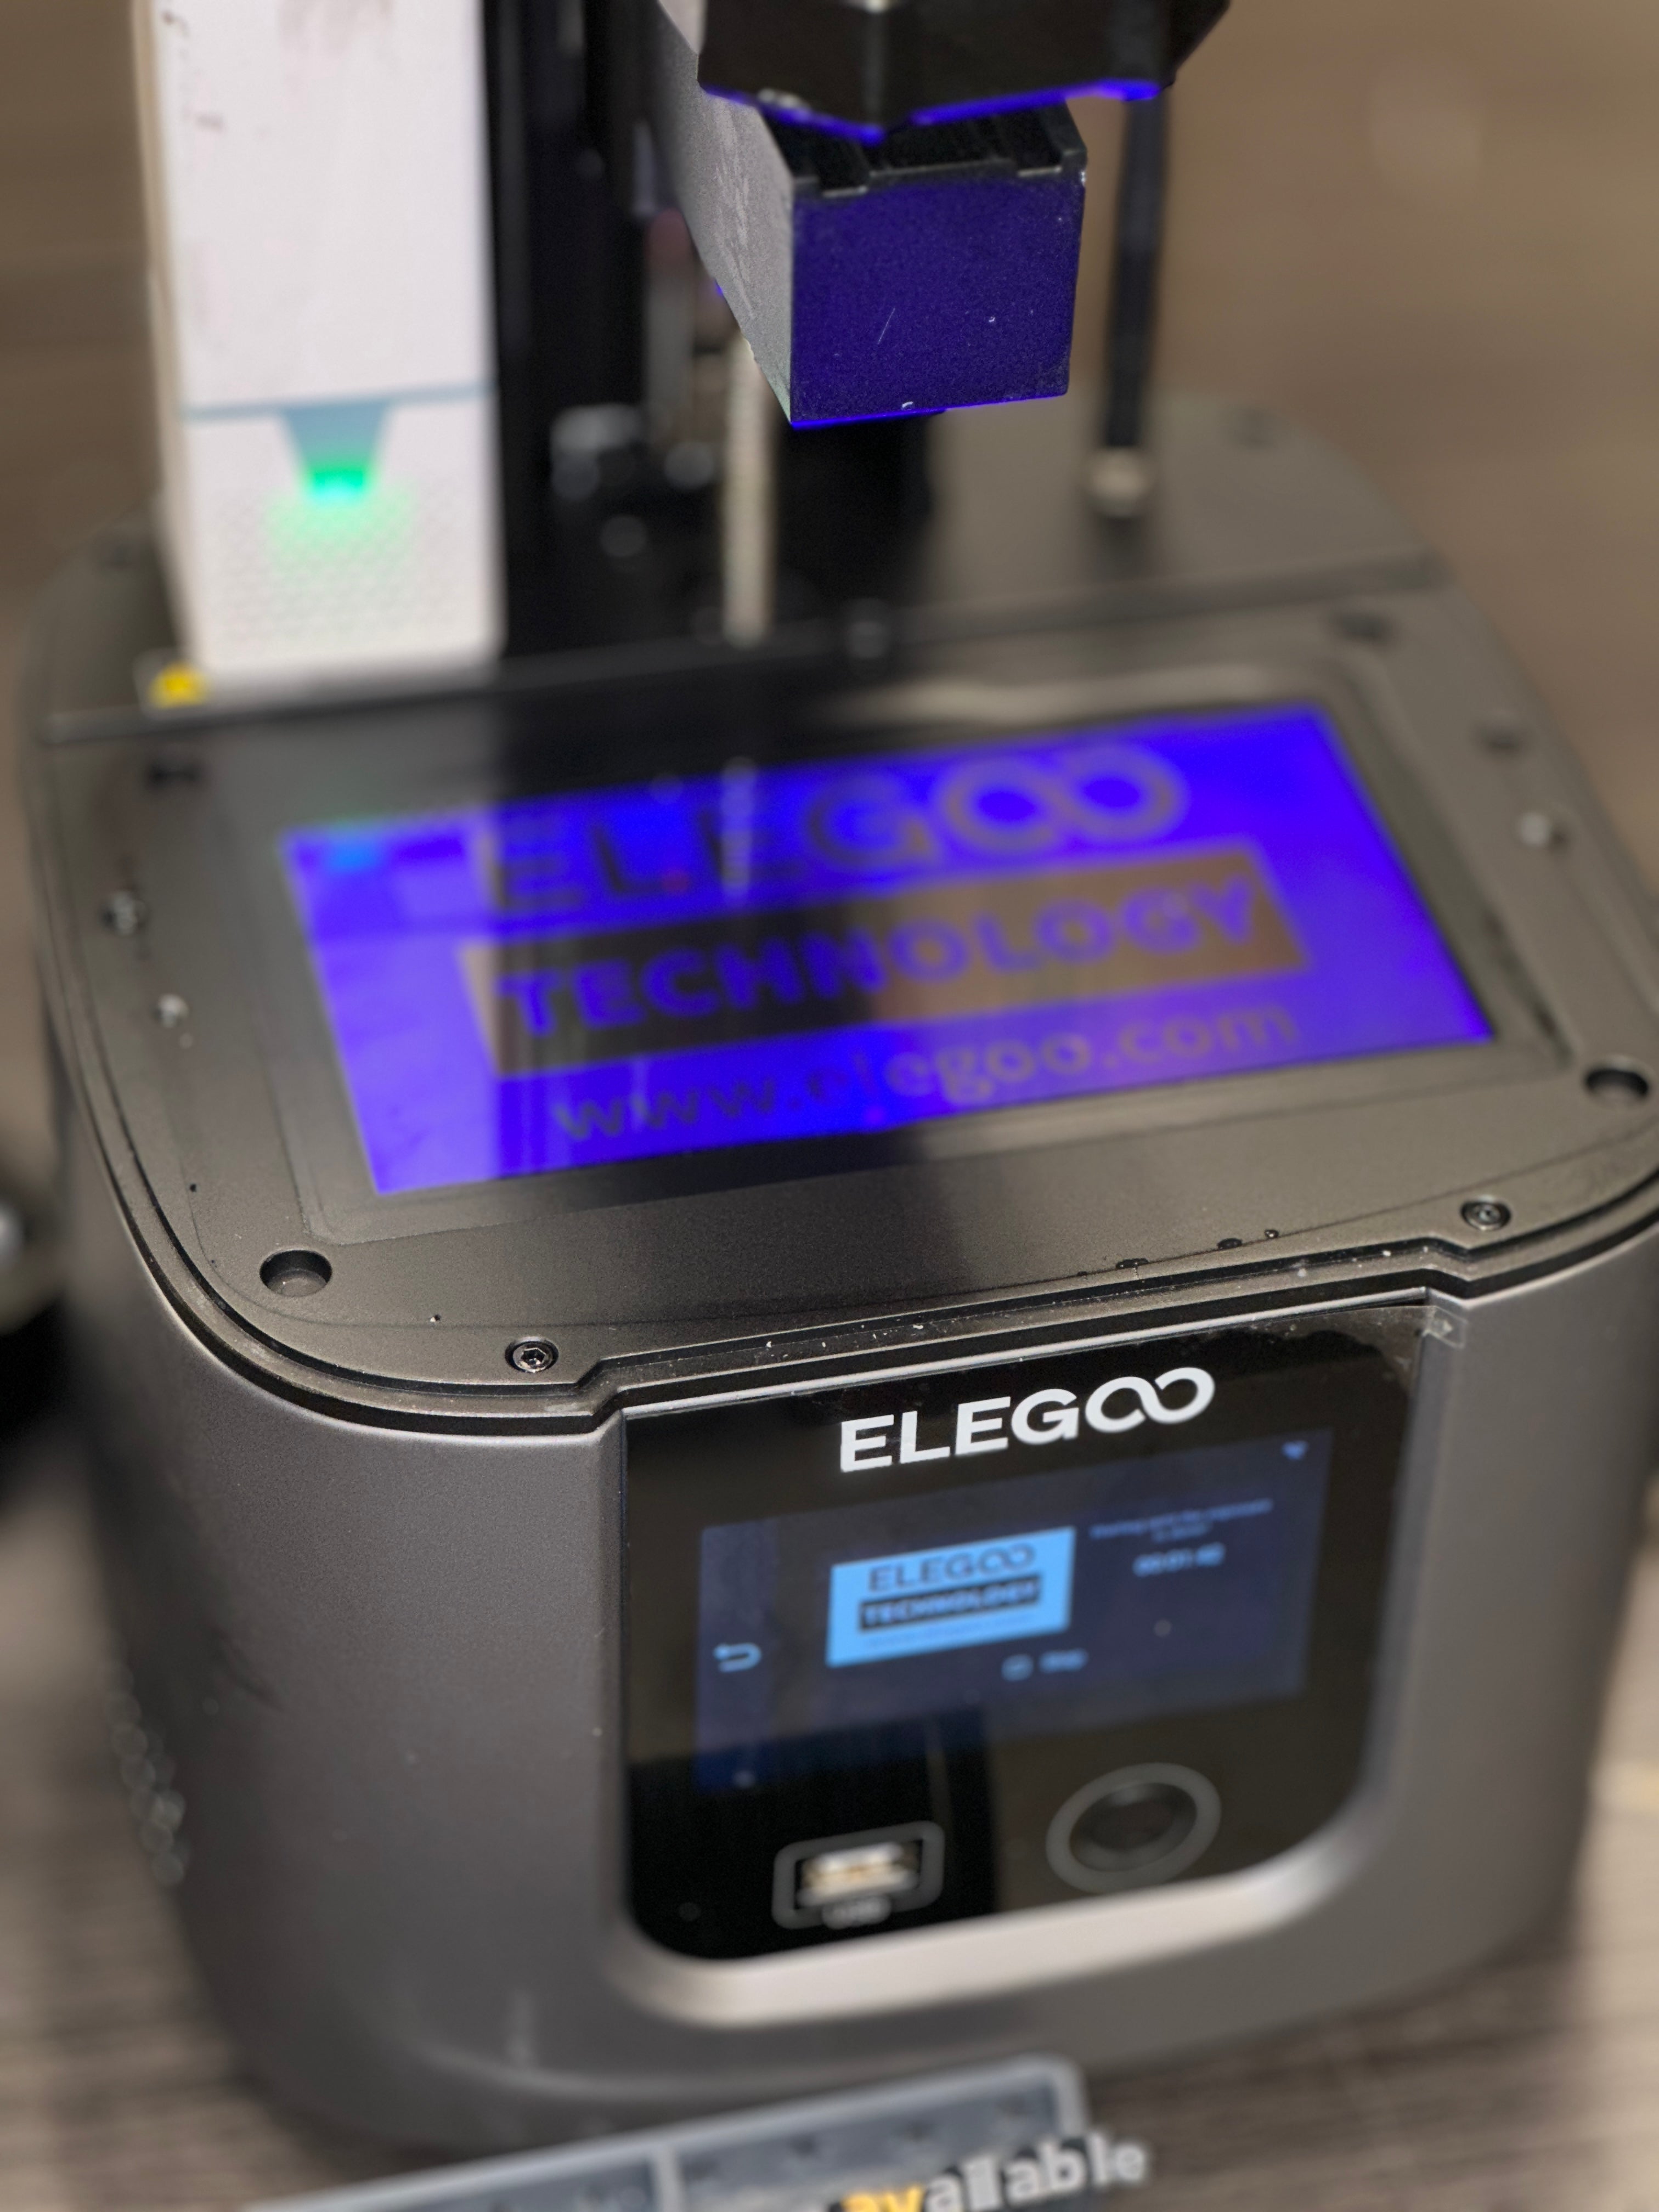 Elegoo Mars 4 Series Max, Ultra, DLP Resin 3D Printer 2K 6k 9k Resolut – NV  LIQUIDATION LLC